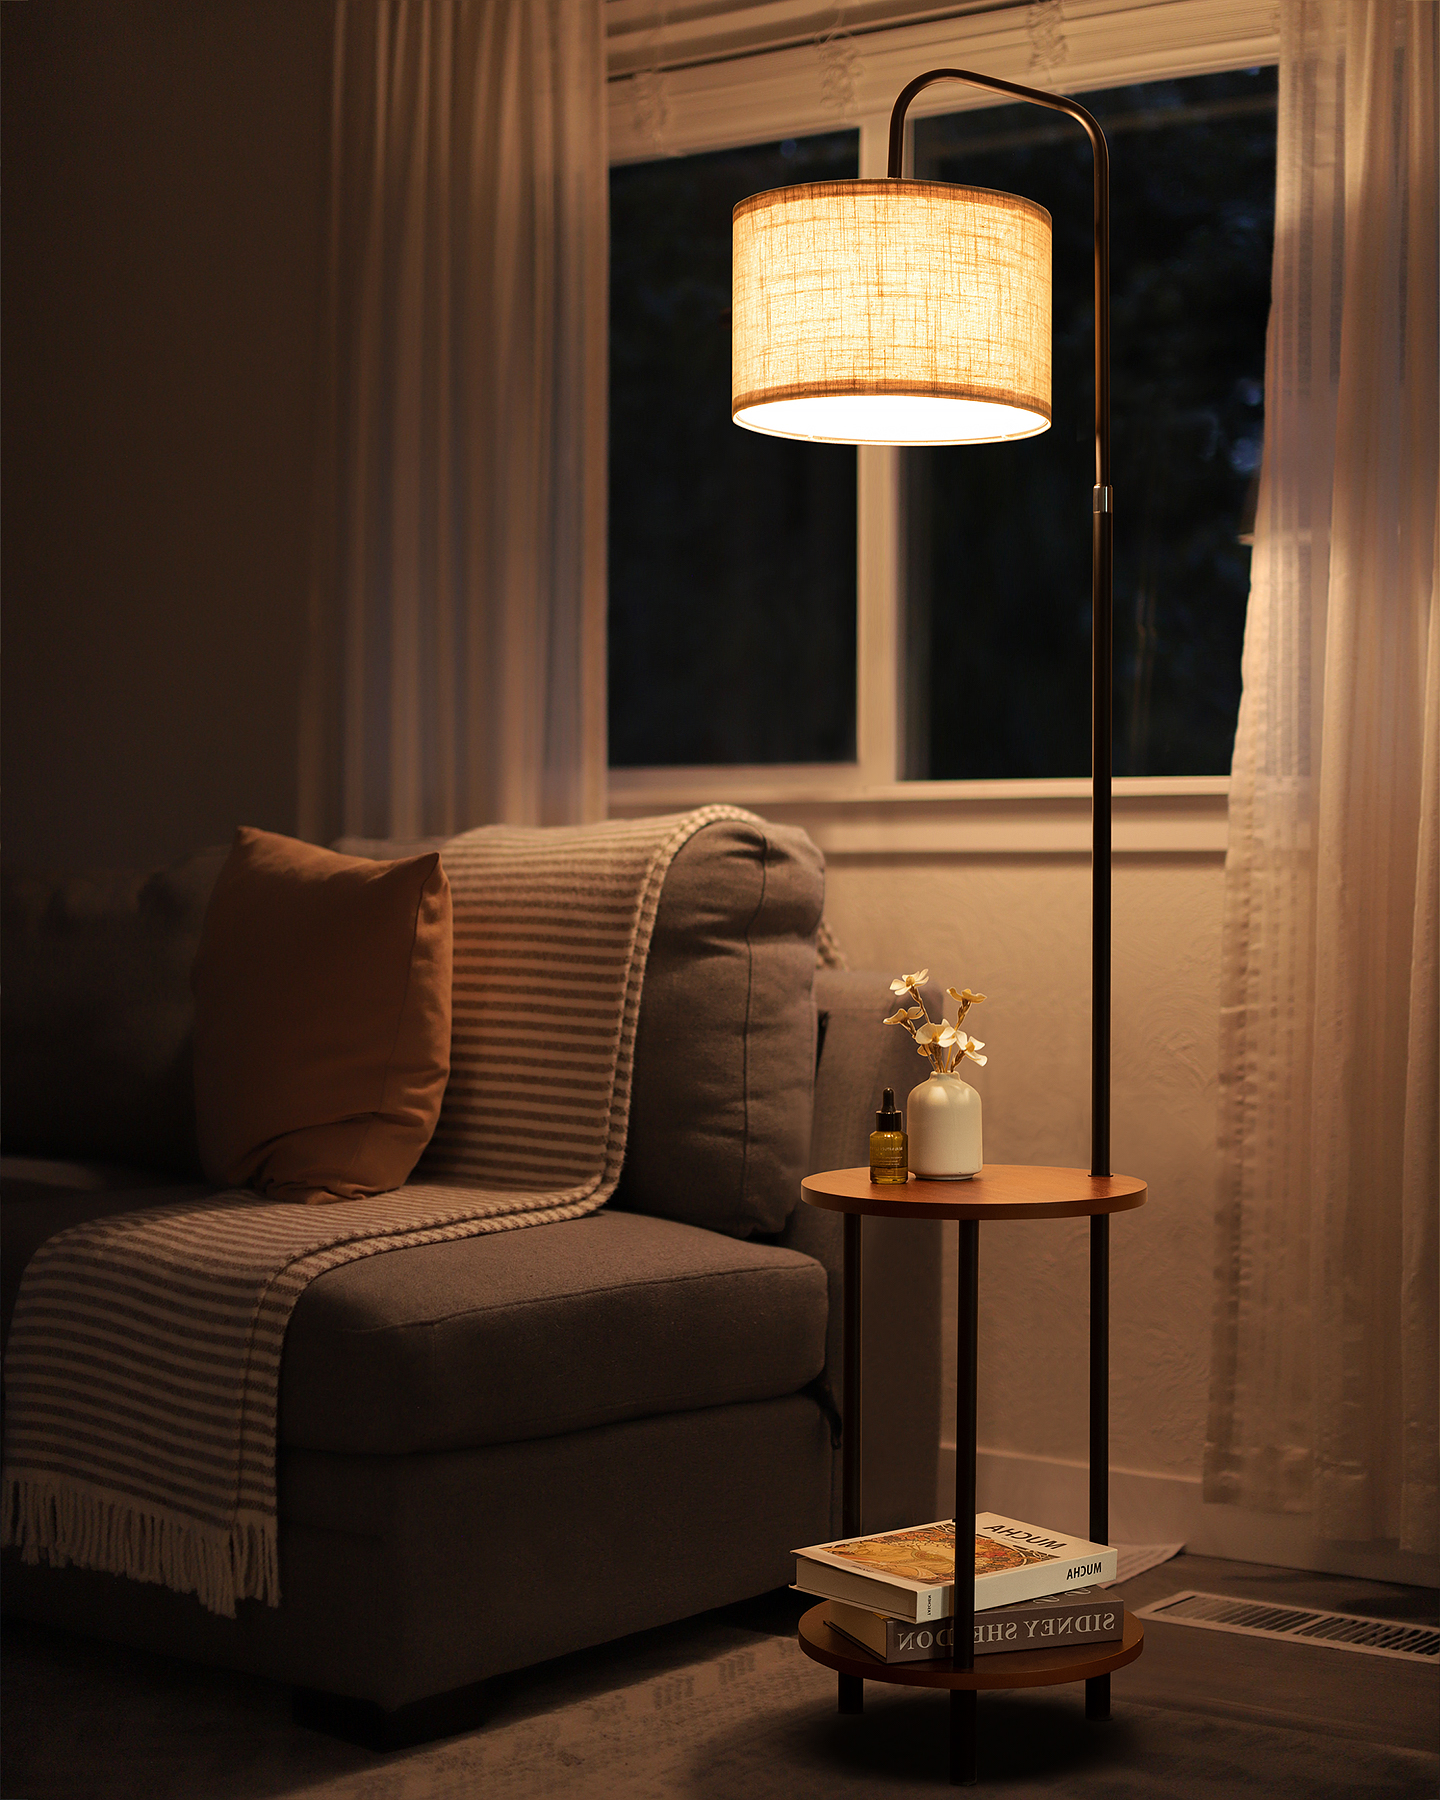 TOMONS Stehlampe Wohnzimmer mit Stehlampe für Tisch, Stehlampe Verstellbare Holz Schlafzimmer